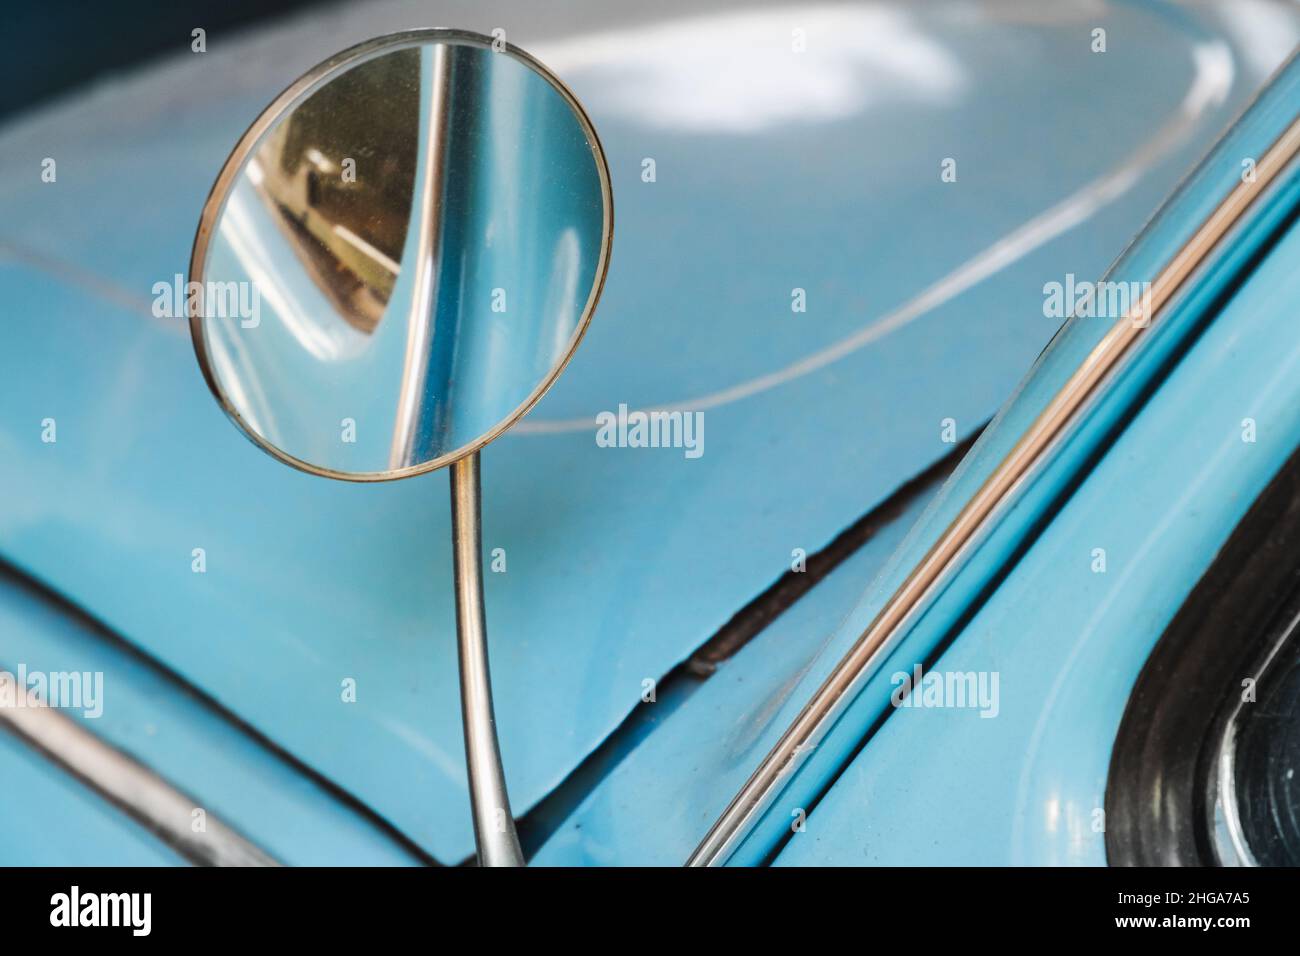 Ein Paar Fuzzy Dice, das aus dem Rückspiegel eines antiken Autos aufgehängt  wird Stockfotografie - Alamy